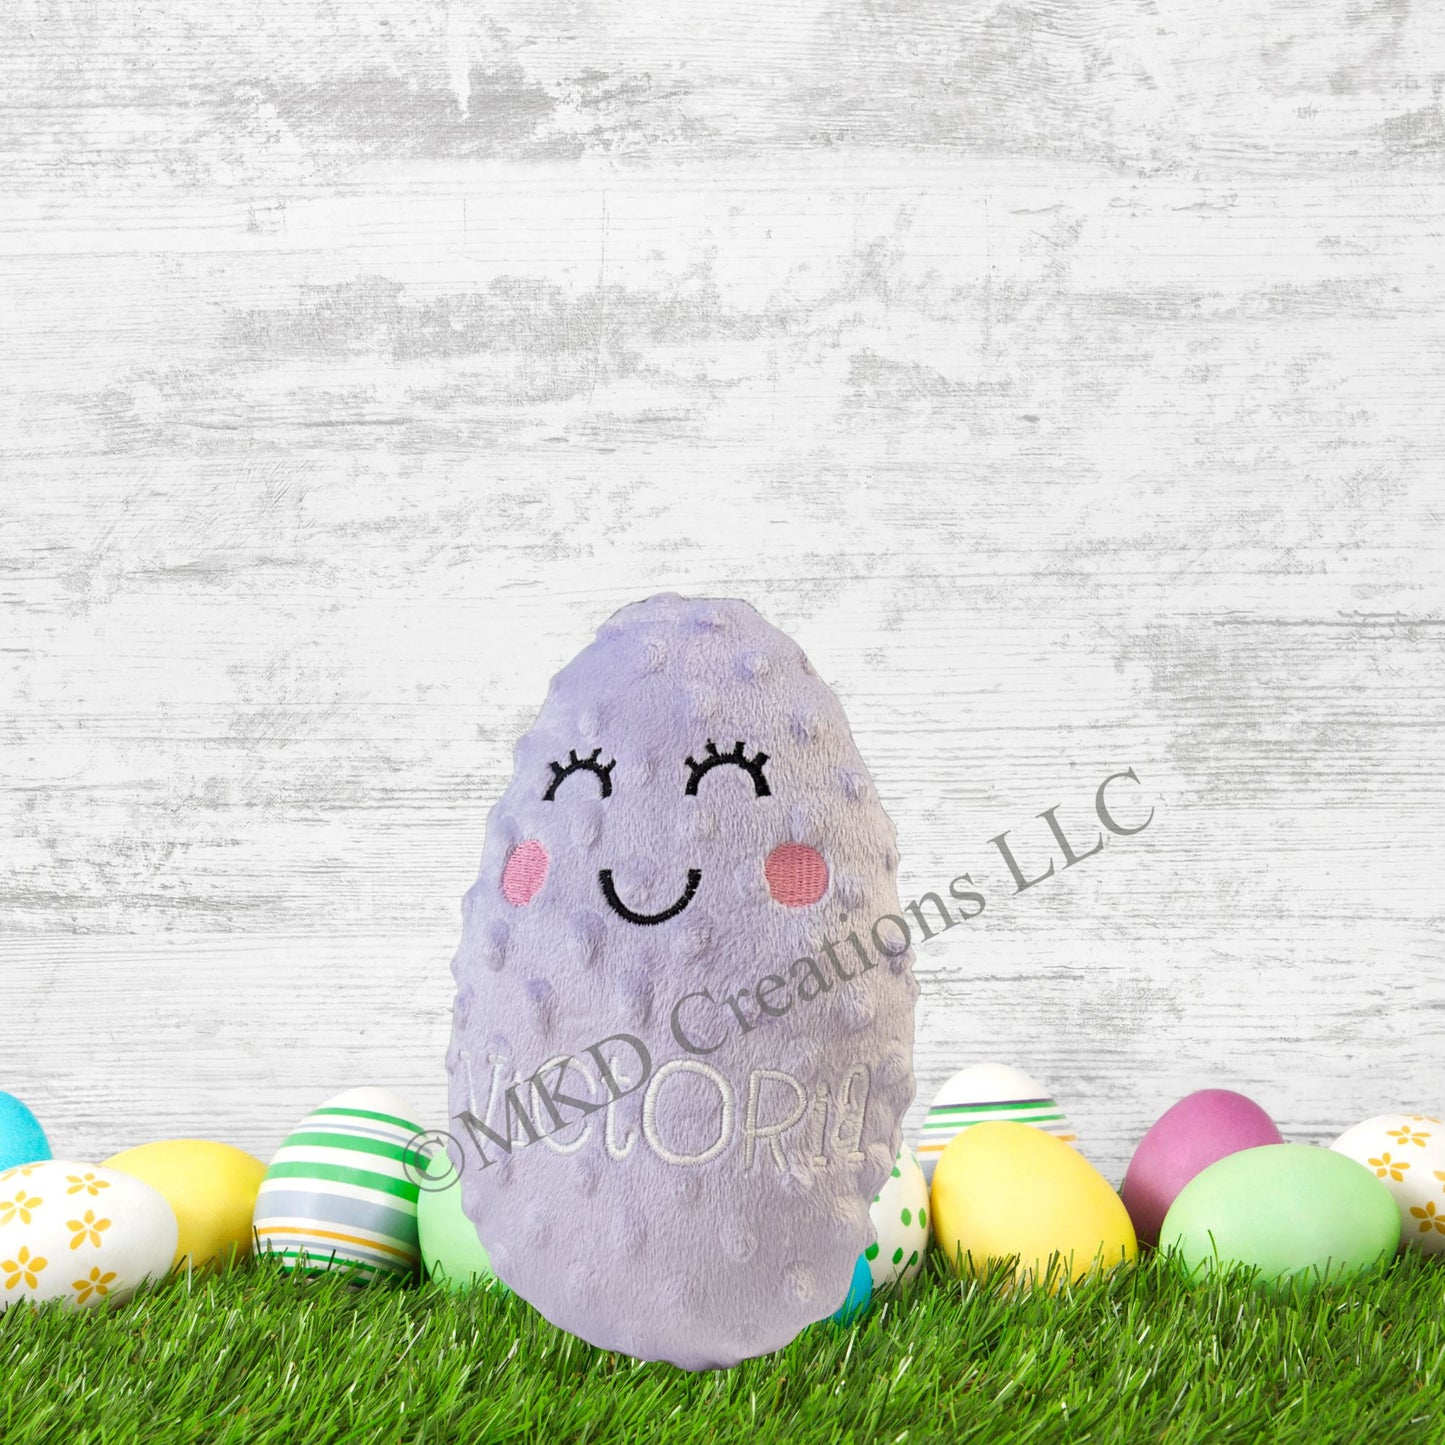 Personalized Easter Egg Plushie|Lavender Easter Egg| Stuffed Easter Egg gift or treat| stuffed pillow|Custom Easter Egg